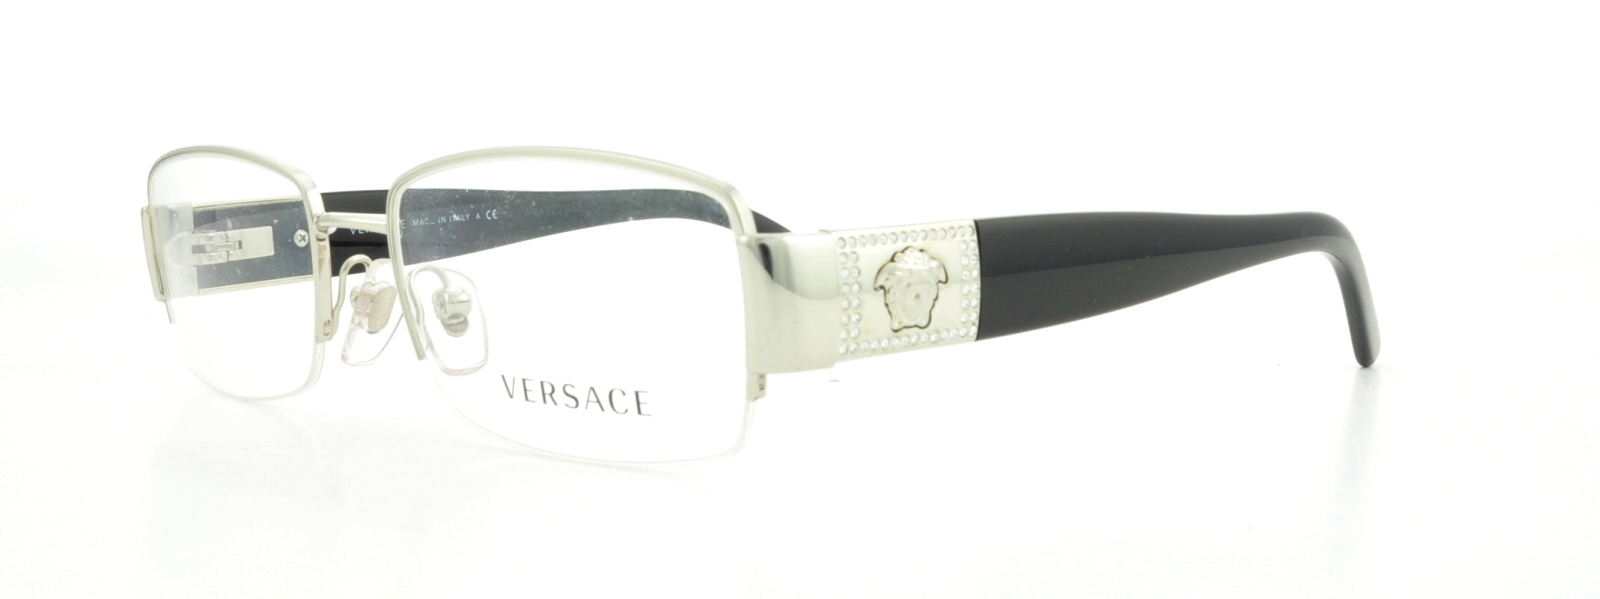 Versace eyeglasses www.ugel01ep.gob.pe